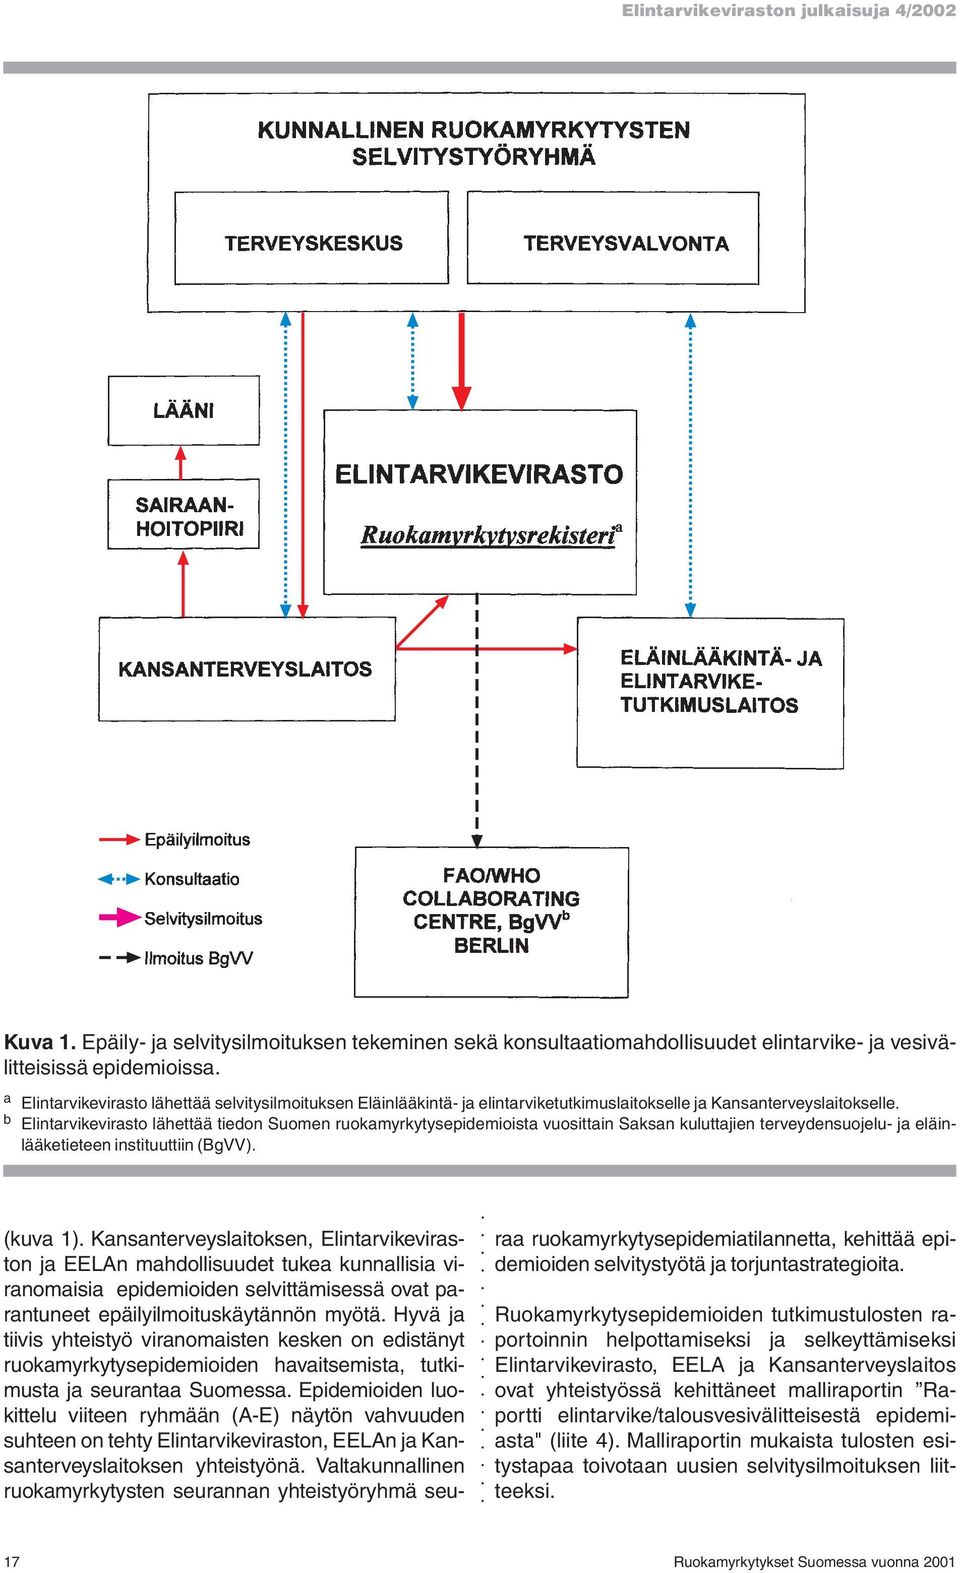 b Elintarvikevirasto lähettää tiedon Suomen ruokamyrkytysepidemioista vuosittain Saksan kuluttajien terveydensuojelu- ja eläinlääketieteen instituuttiin (BgVV). (kuva 1).